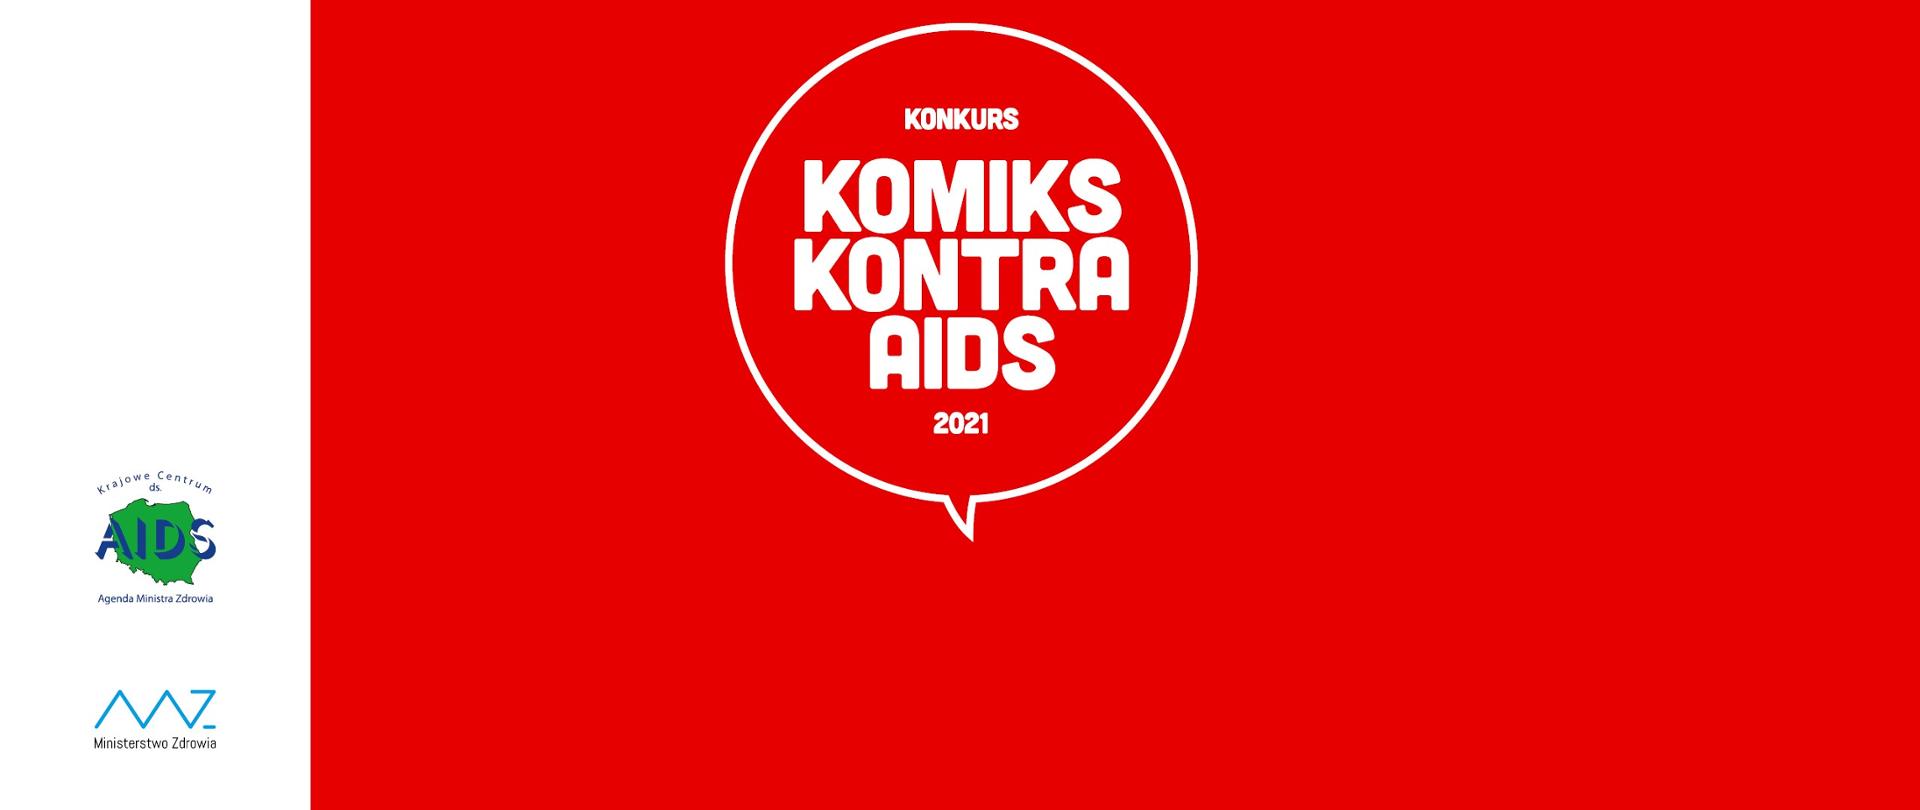 Obrazek z napisem "Konkurs - Komiks kontra AIDS 2021" na czerwonym tle